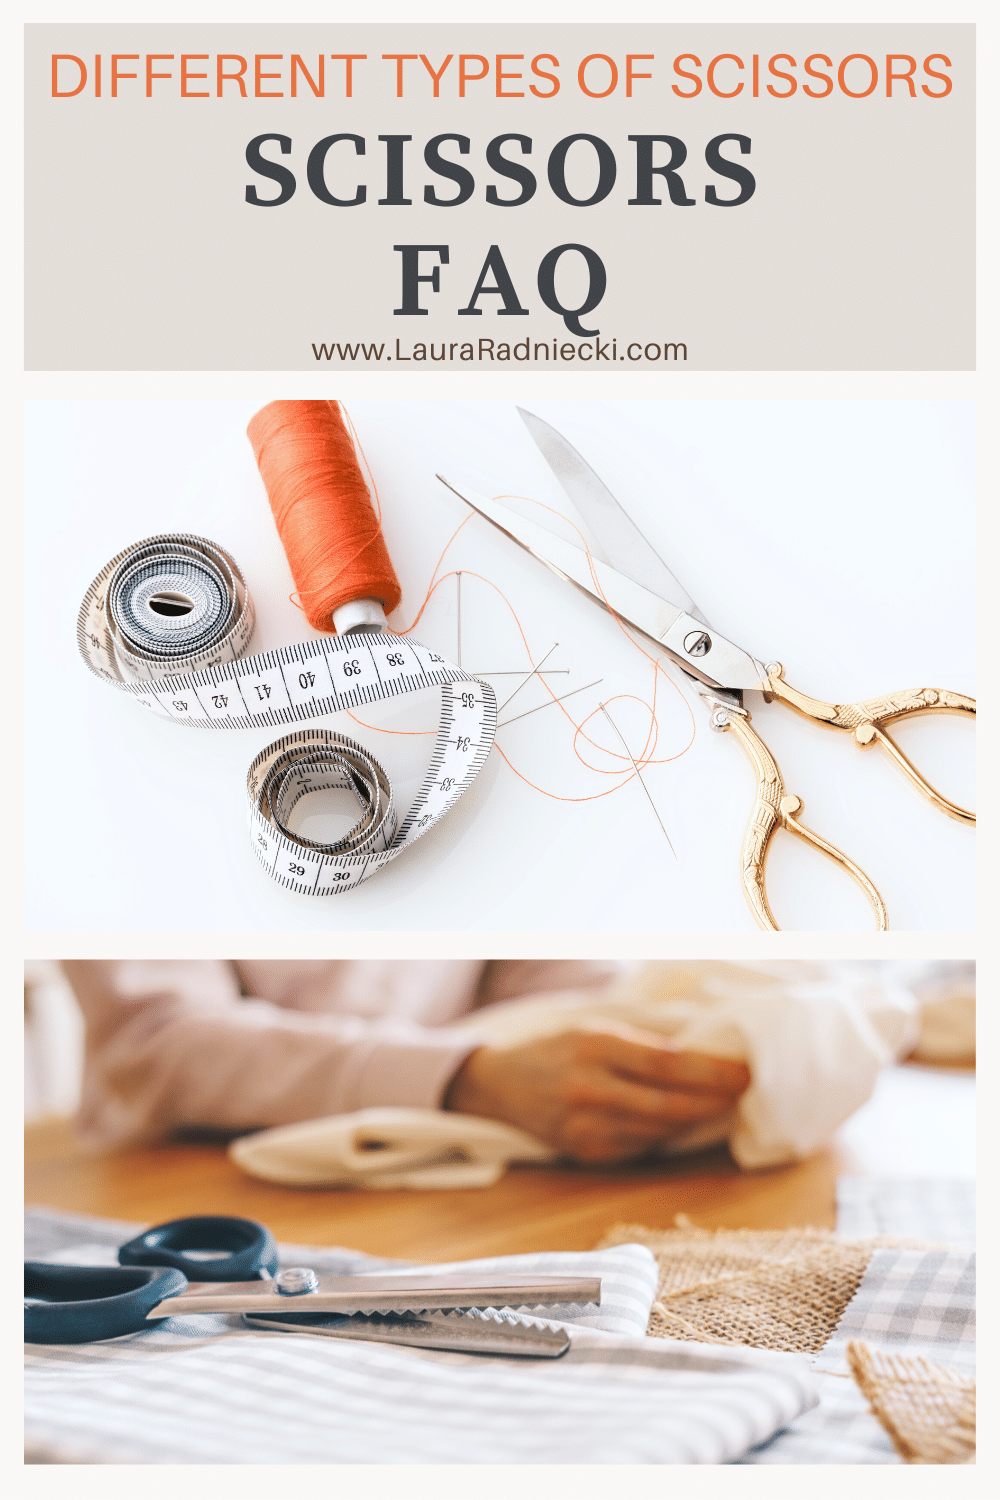 Scissors FAQ | Different Types of Scissors